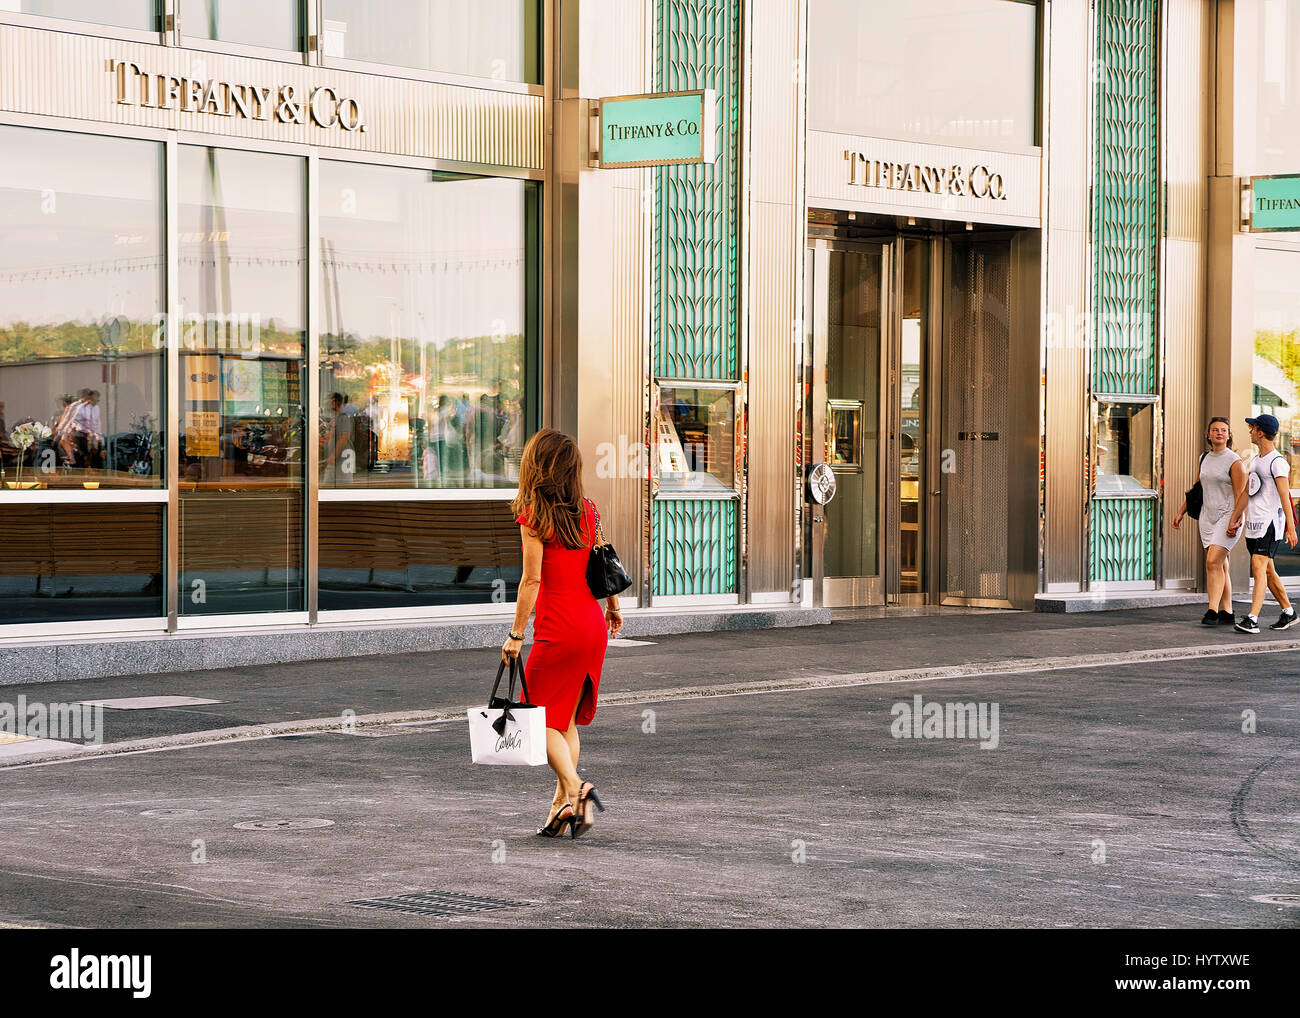 Ginevra, Svizzera - 30 agosto 2016: Donna in abito rosso andando a Tiffany negozio gioielli nel centro di Ginevra, Svizzera Foto Stock